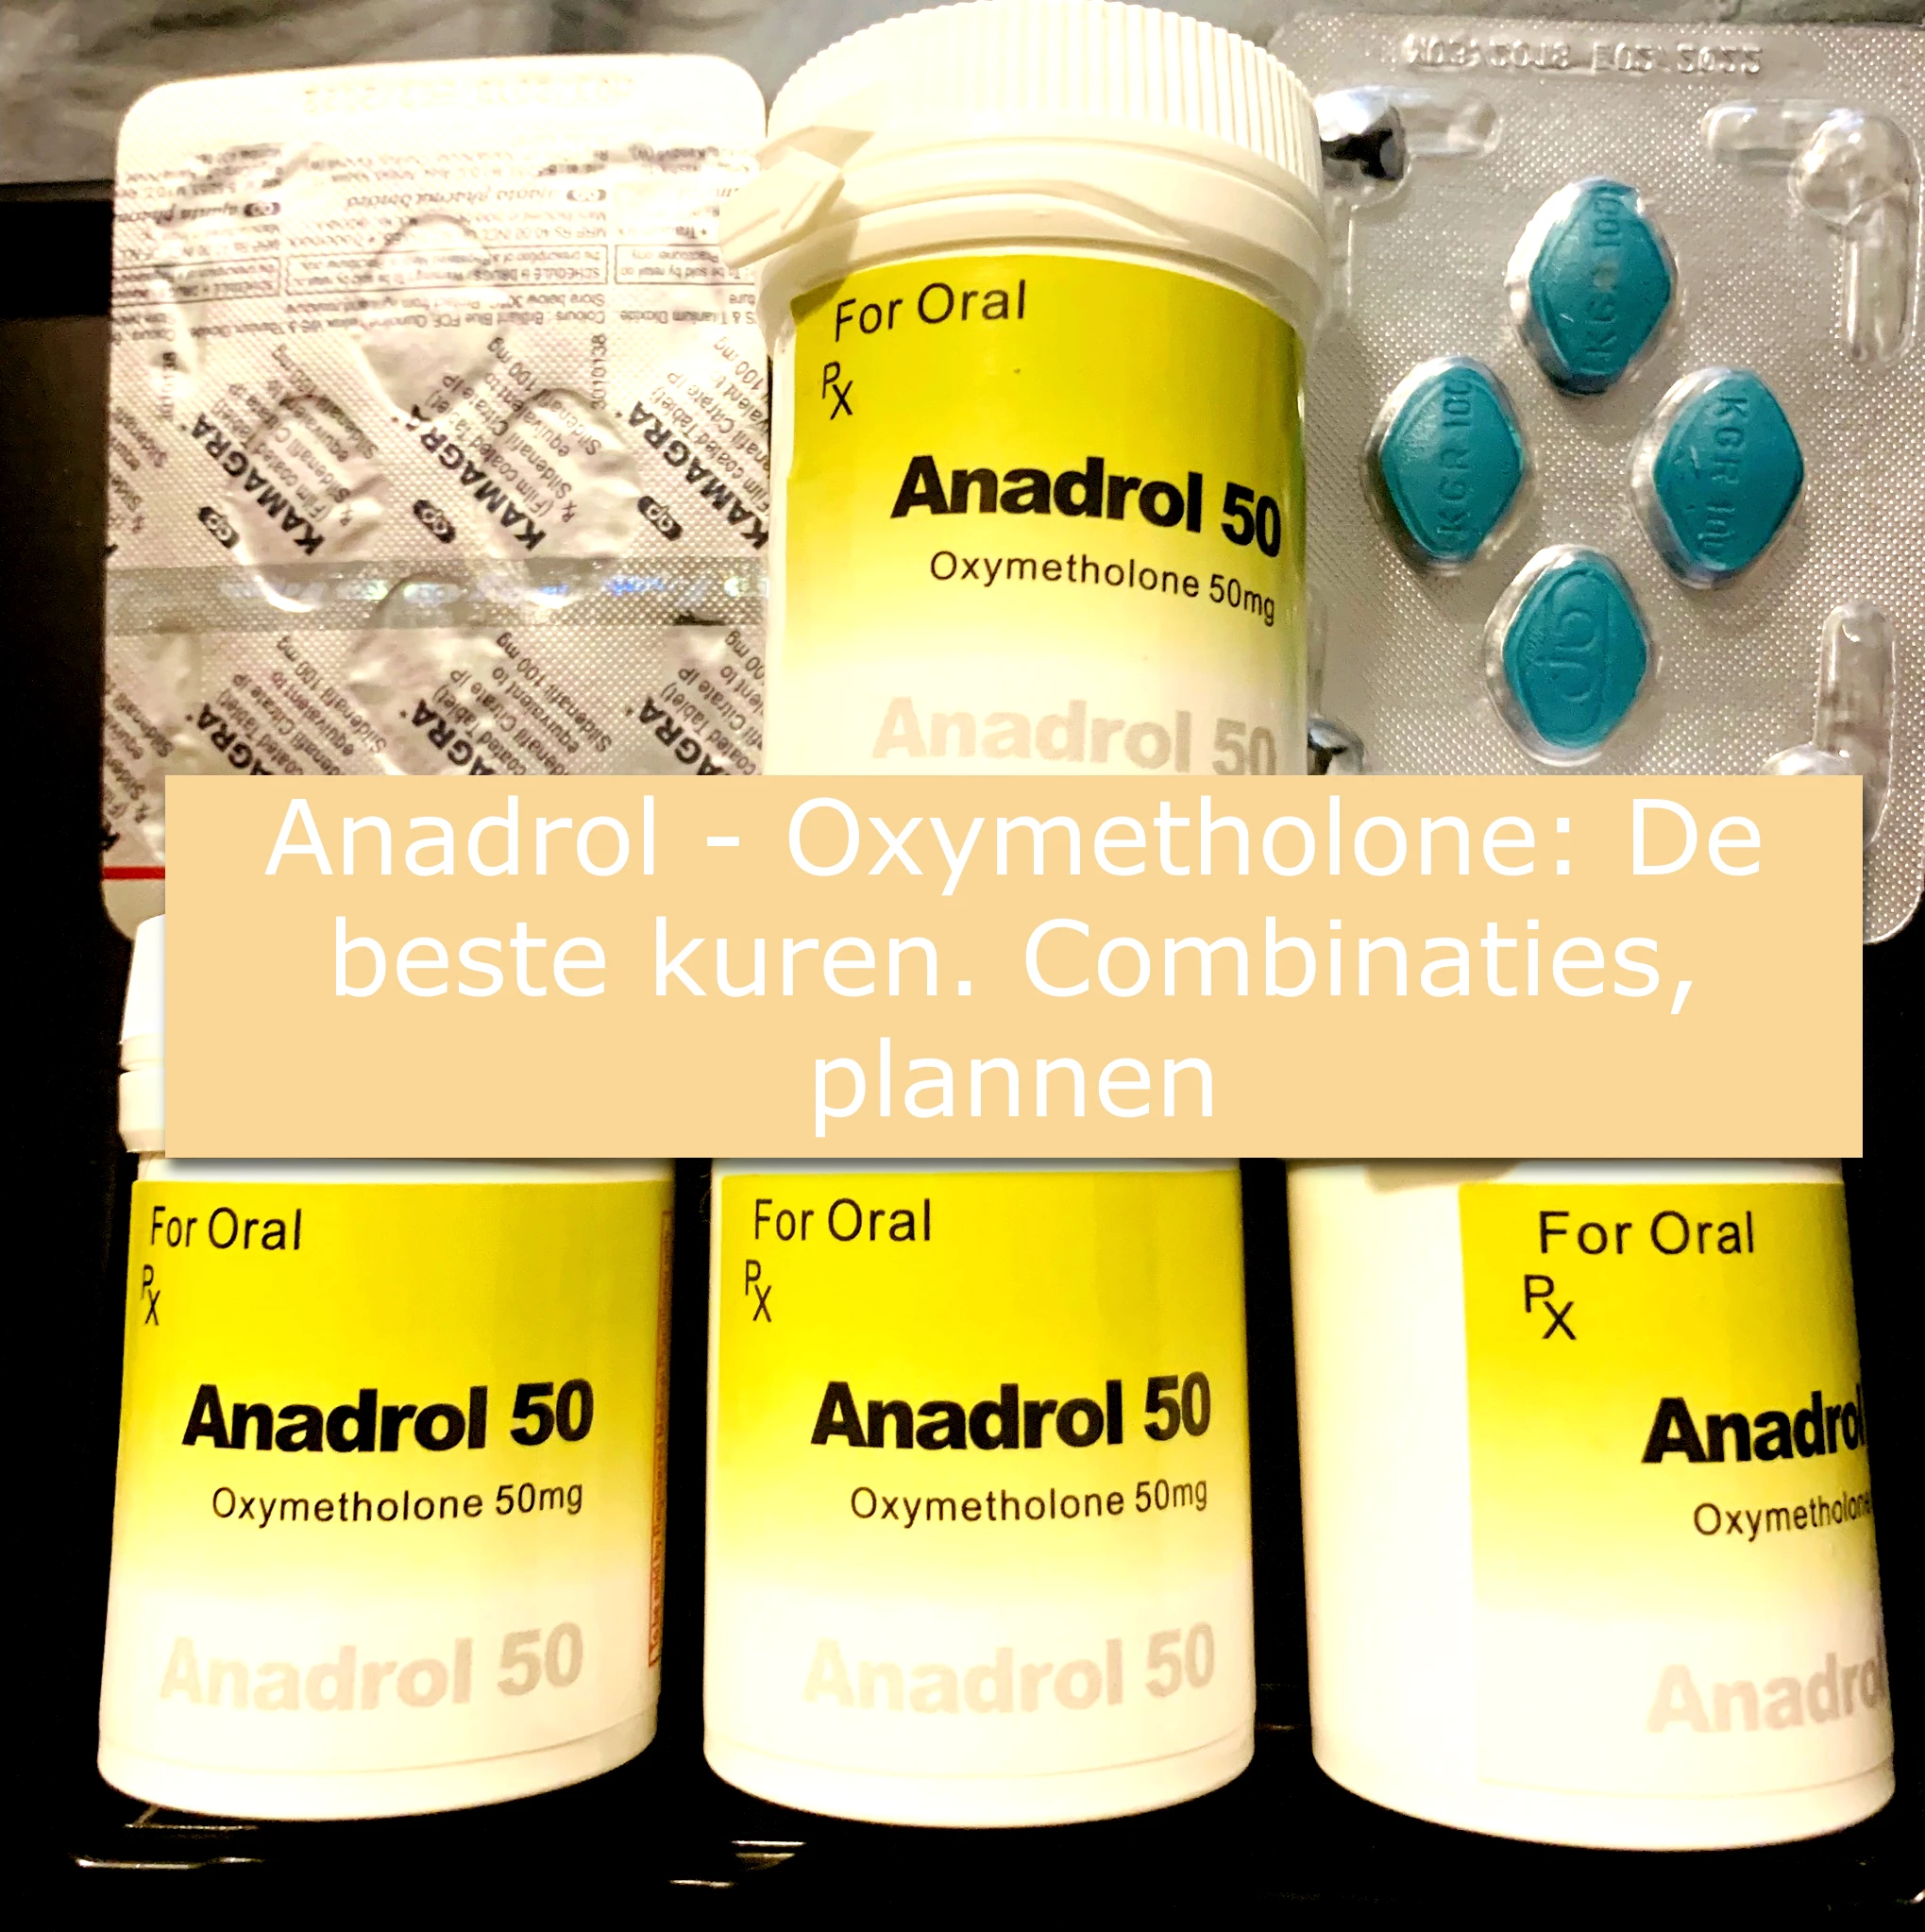 Anadrol - Oxymetholone: De beste kuren. Combinaties, plannen